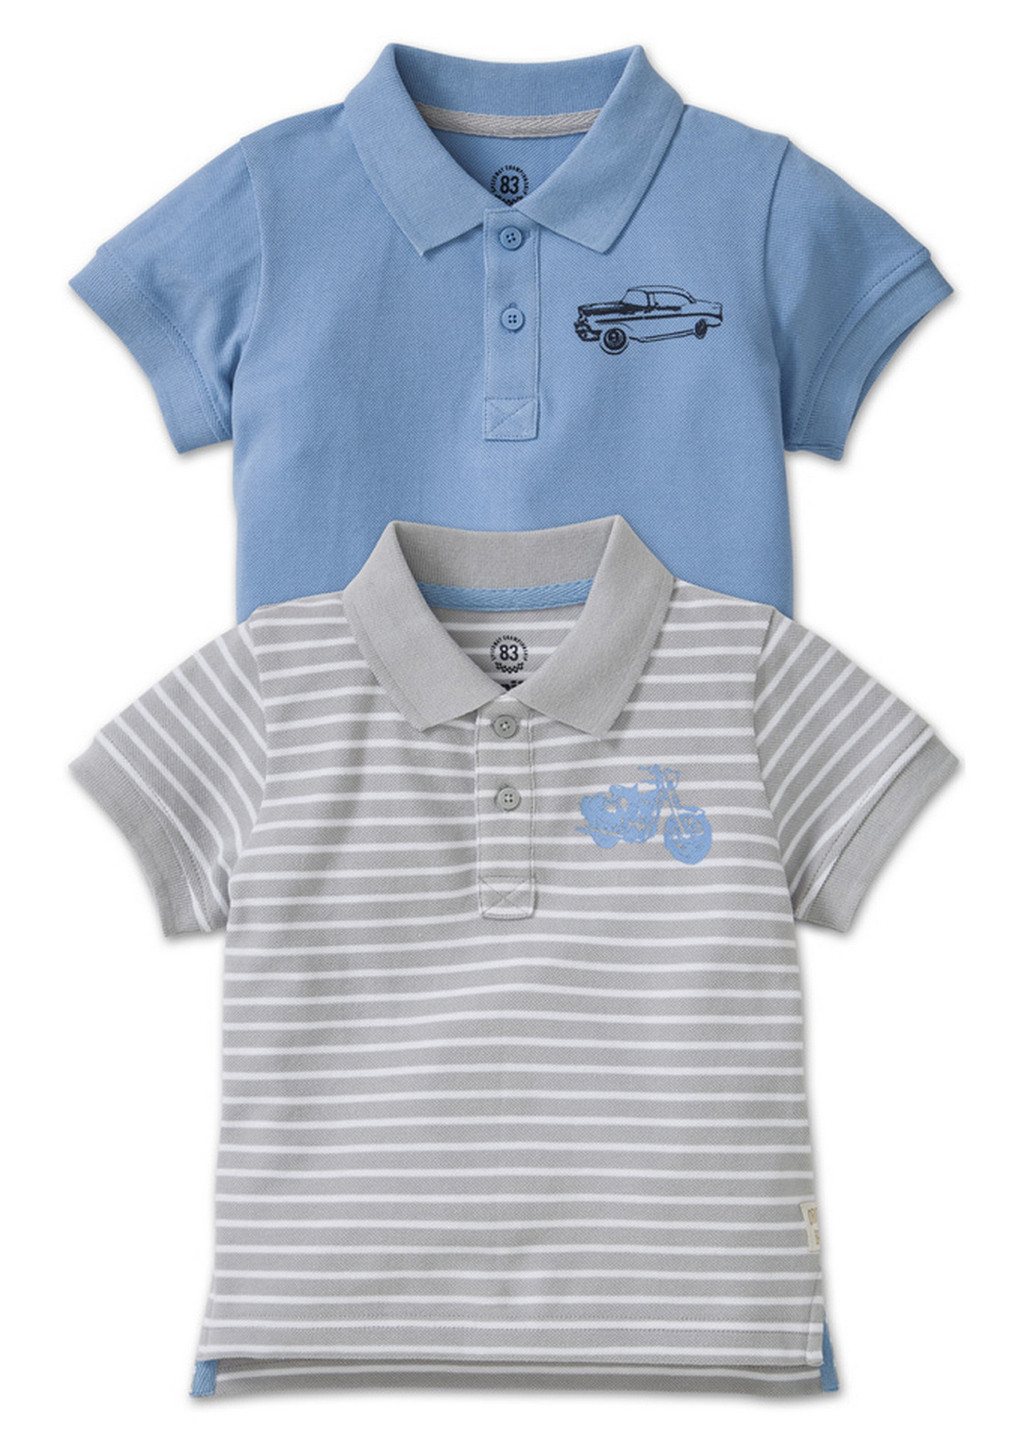 Серо-голубой детская футболка-поло (2 шт.) для мальчика Lupilu в полоску